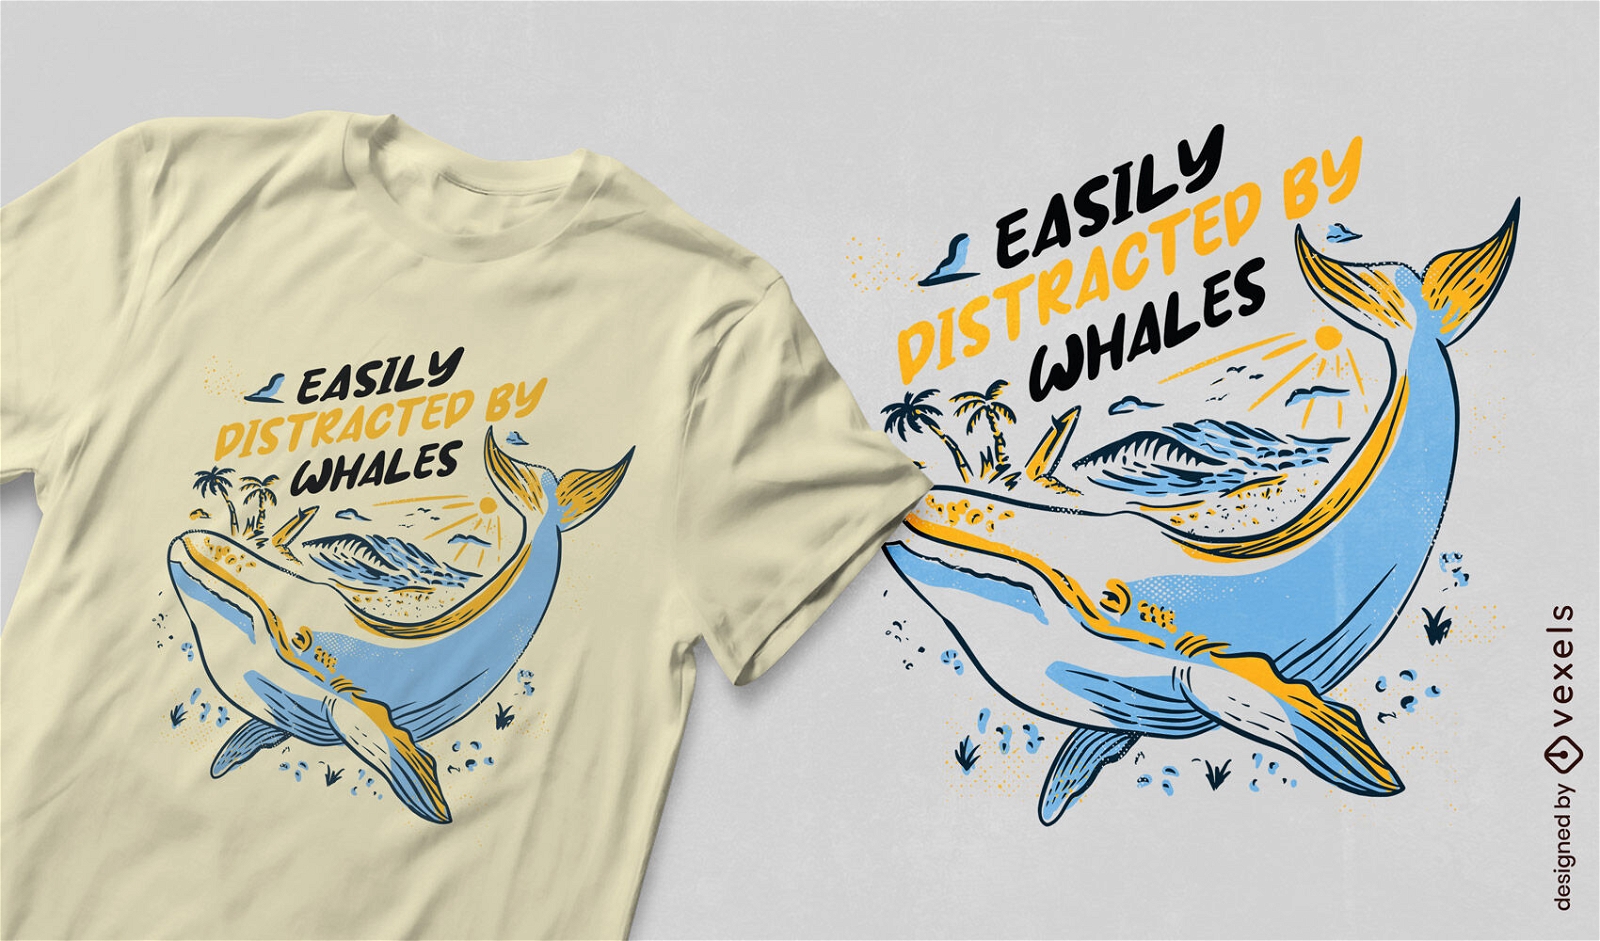 Design excêntrico de camiseta com citação de distração de baleia